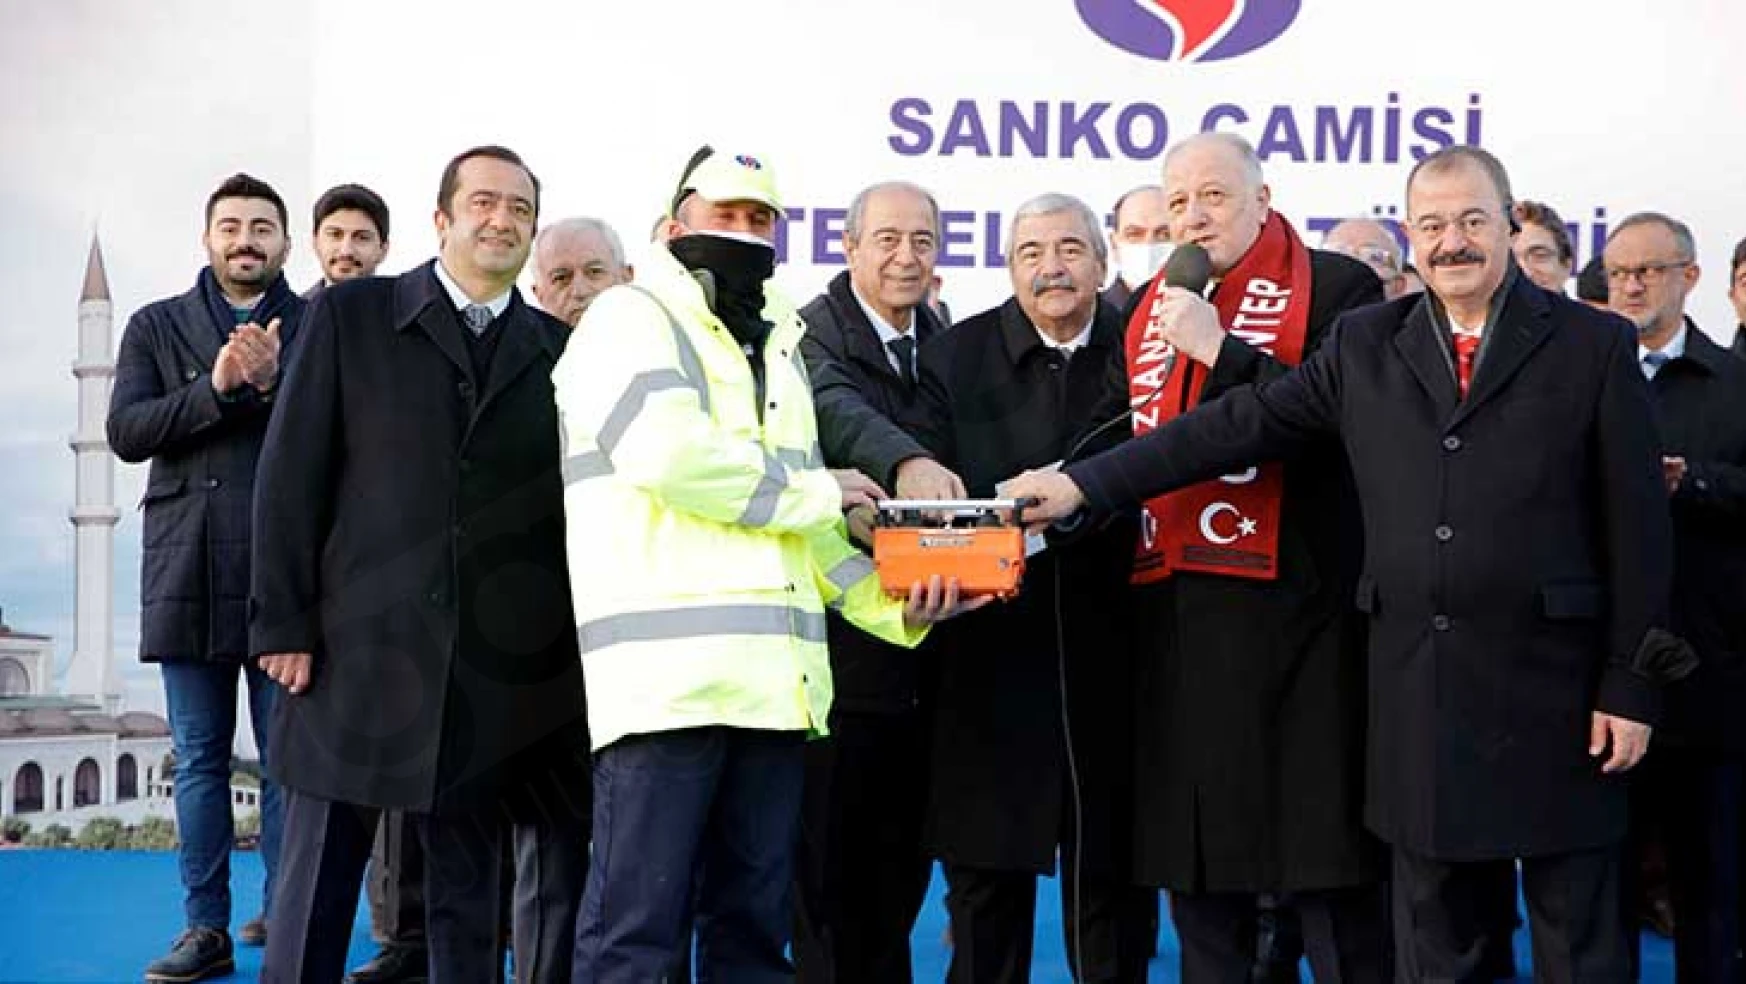 Cumhurbaşkanı Erdoğan: Tüm SANKO ailesine şahsım ve milletim adına çok teşekkür ediyorum